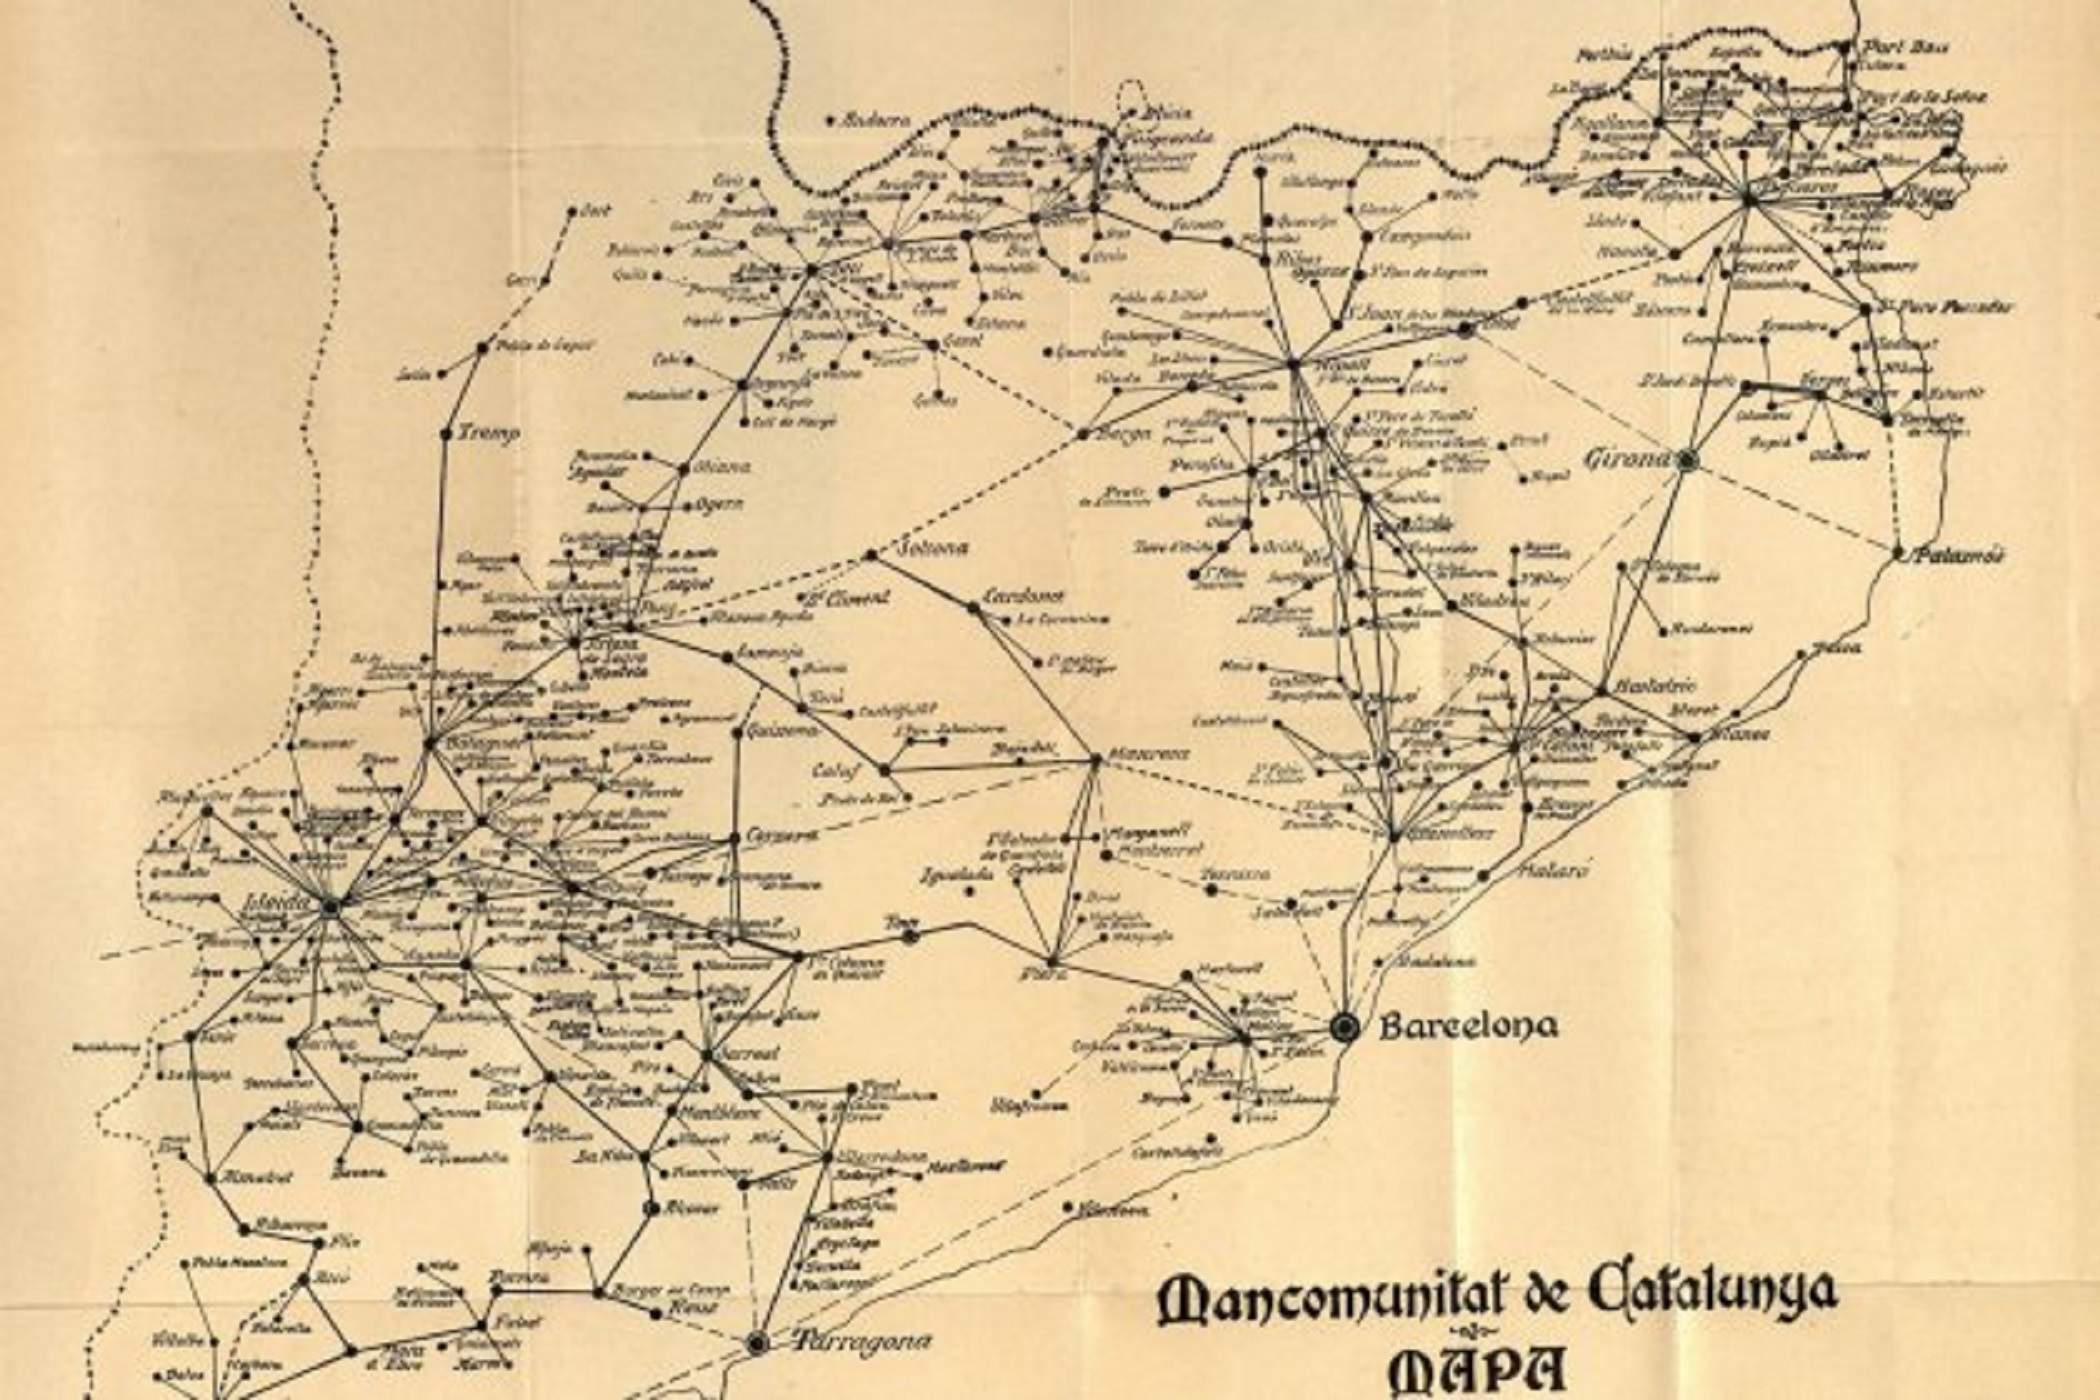 Mapa de la red telefónica catalana (1922) impulsada por la Mancomunidad. Fuente Cartoteca de Catalunya